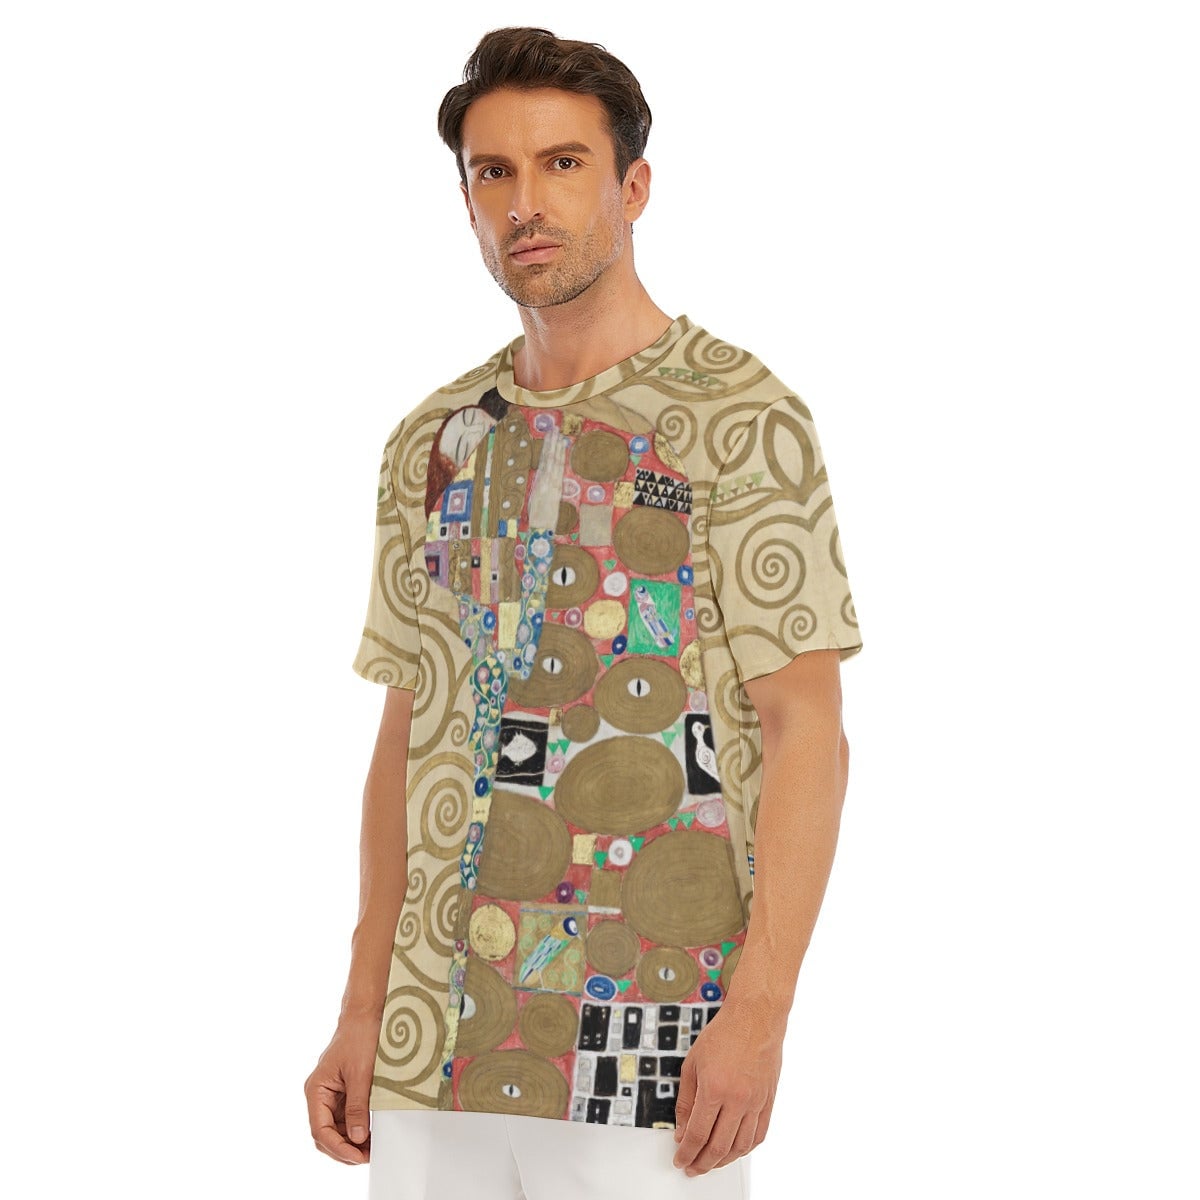 Fulfillment Gustav Klimt T-Shirt - Perfect for Art Lovers